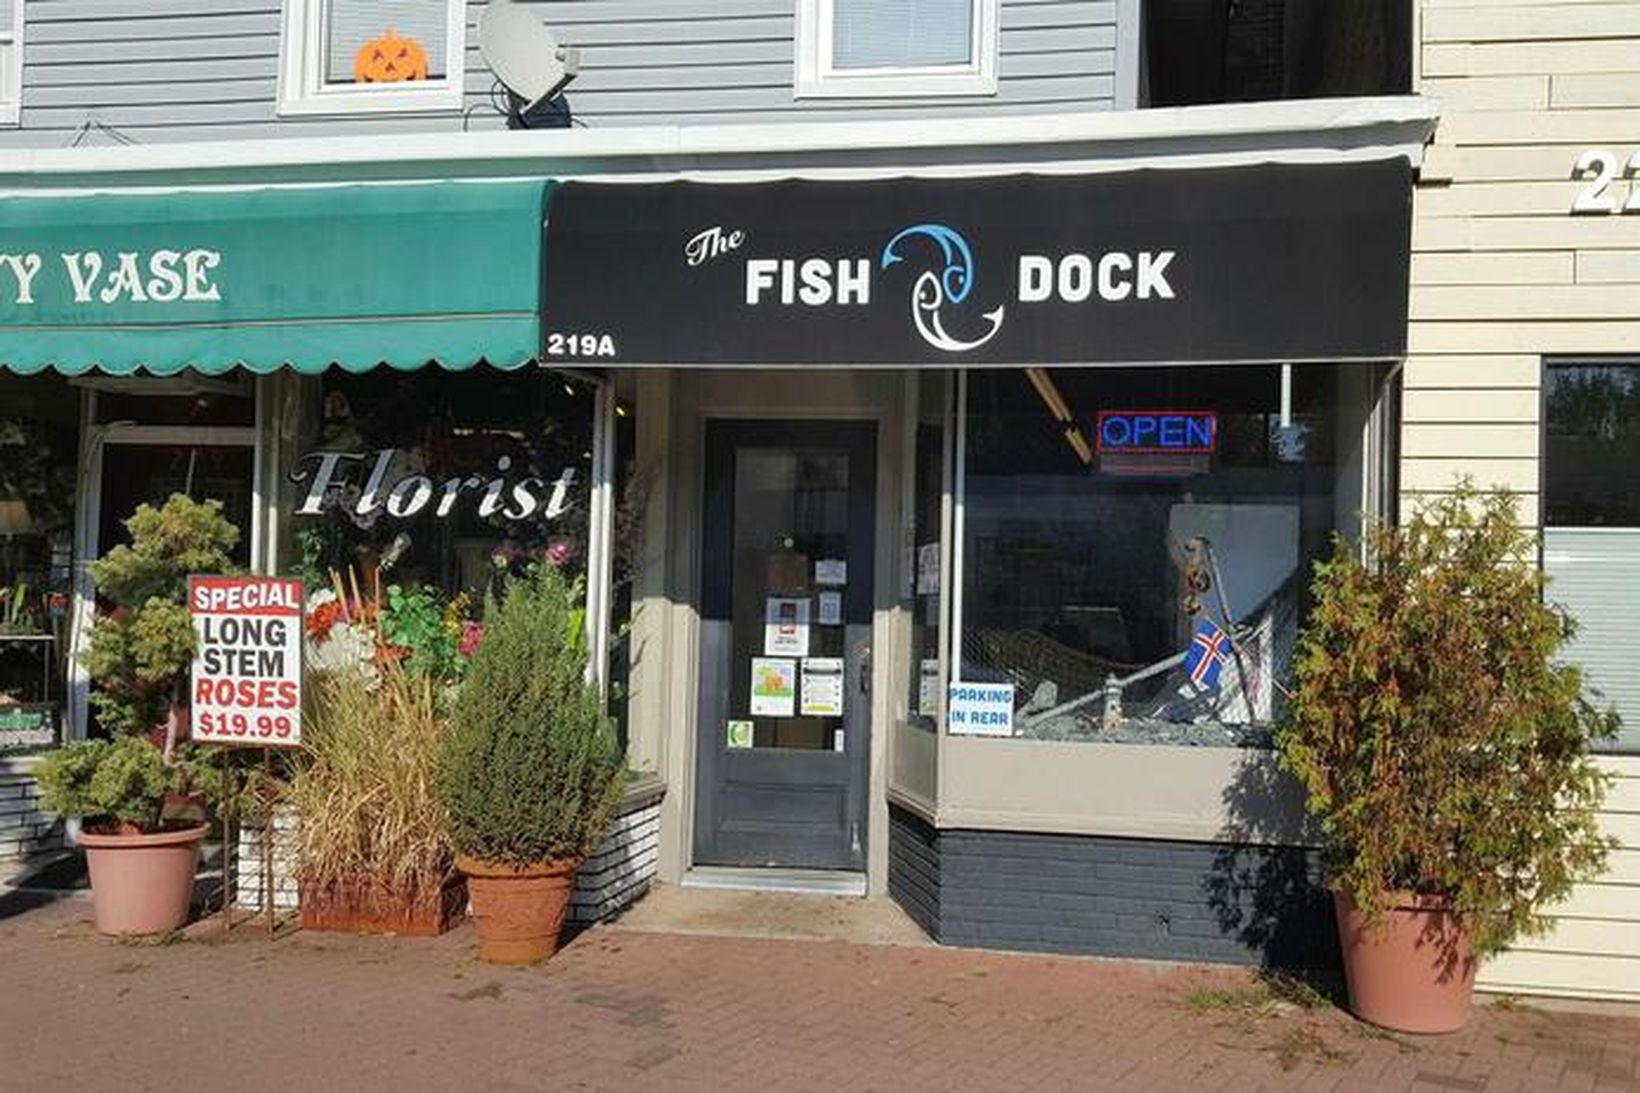 Verslunin The Fish Dock er vel merkt með íslenska fánanum …